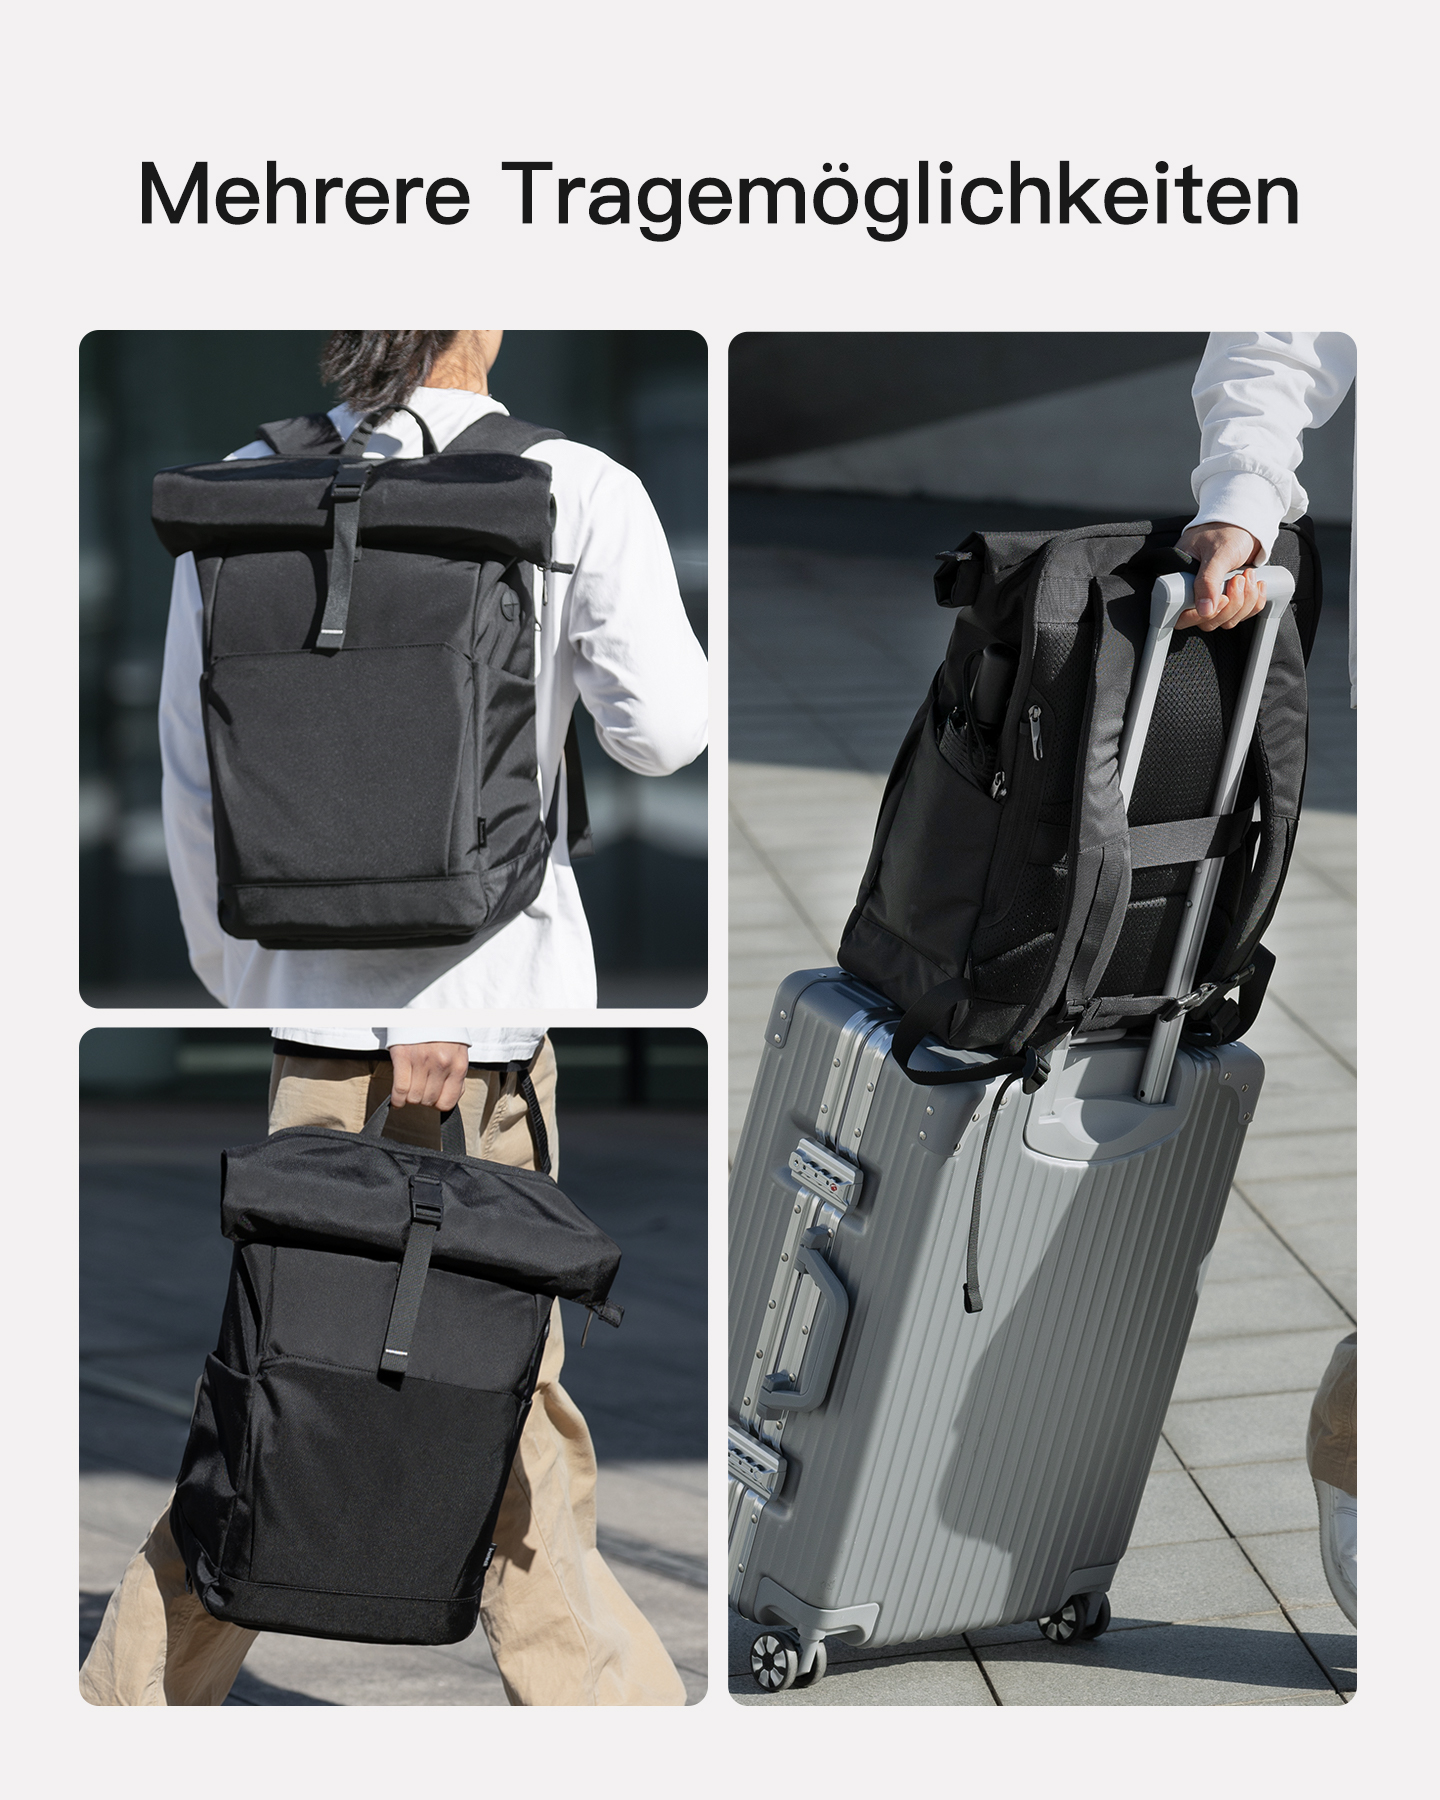 INATECK 30L Rucksack mit BP01007_black für Schuhfach Uni/Pendeln/Freizeit/Arbeit/Sport/Reisen black, separatem Unisex